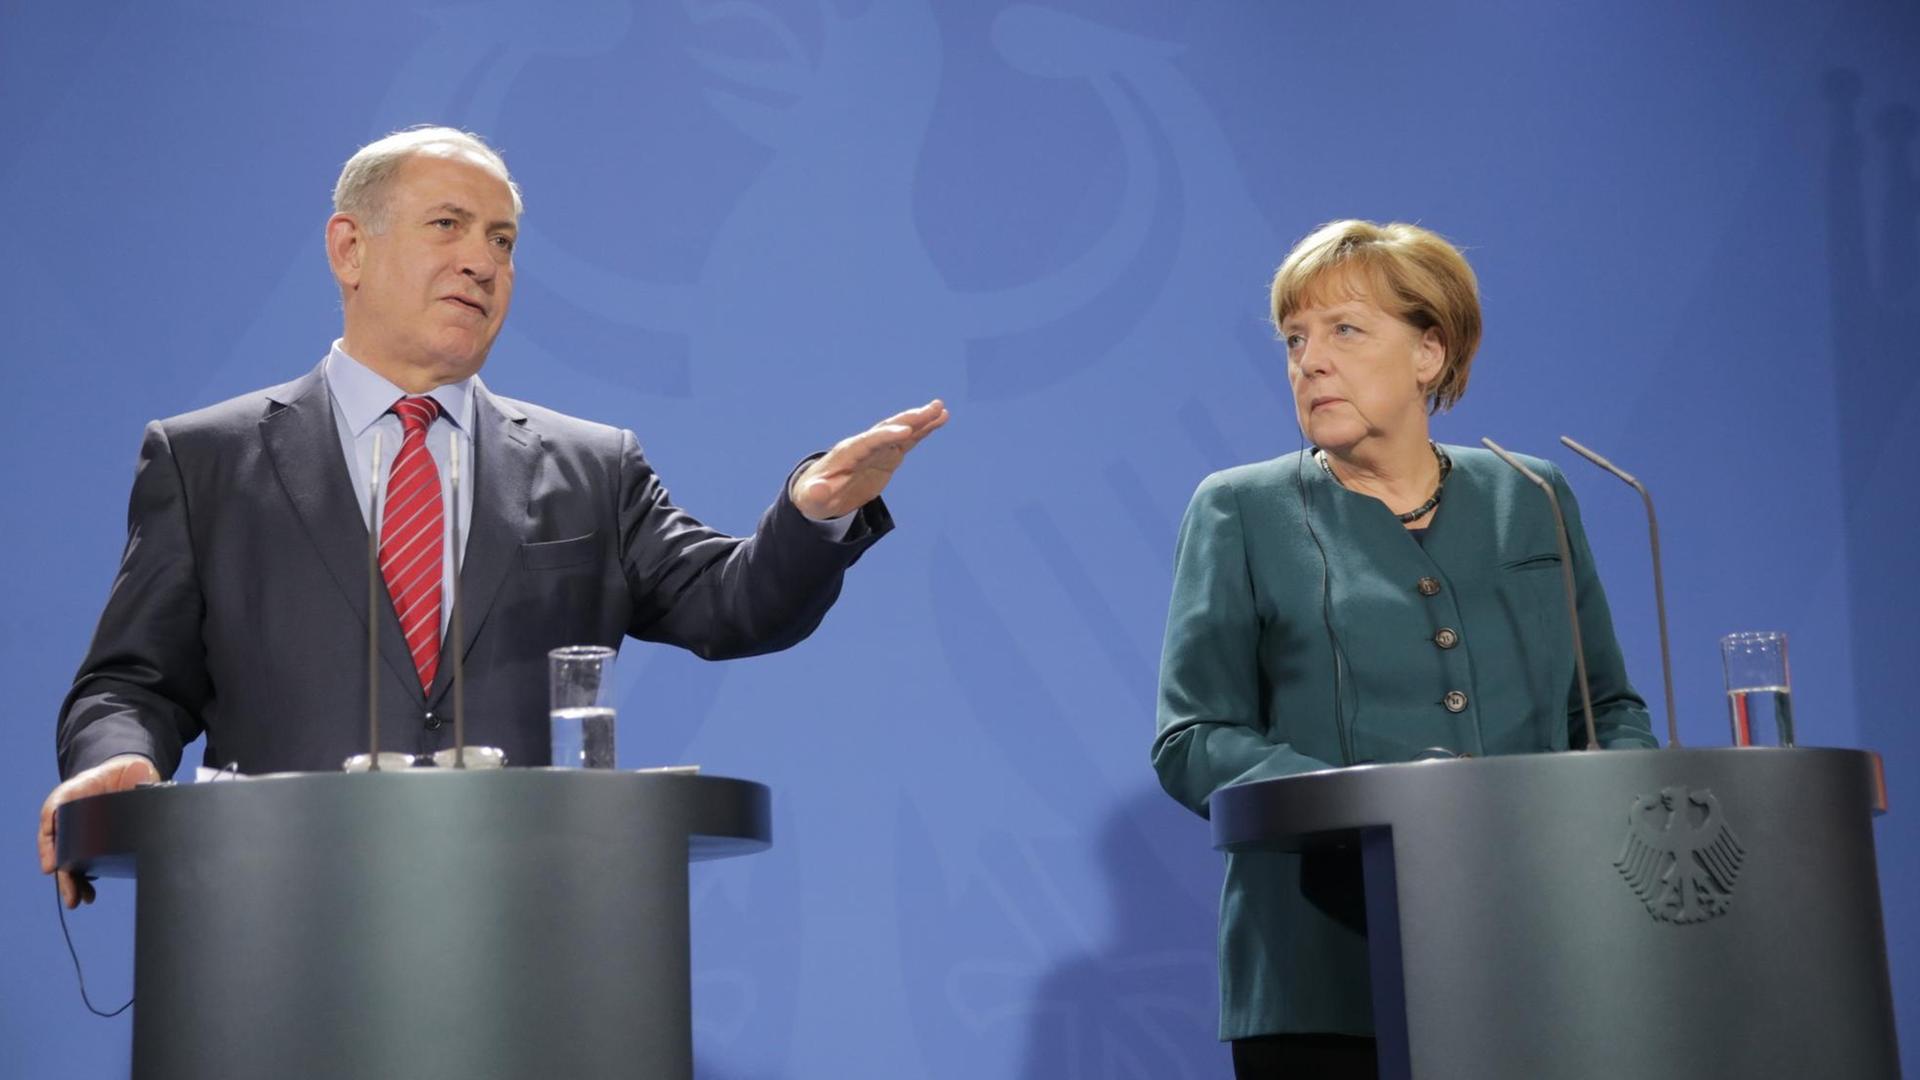 Bundeskanzlerin Angela Merkel (CDU) und Israels Ministerpräsident Benjamin Netanjahu geben am 21.10.2015 im Kanzleramt in Berlin eine gemeinsame Pressekonferenz.